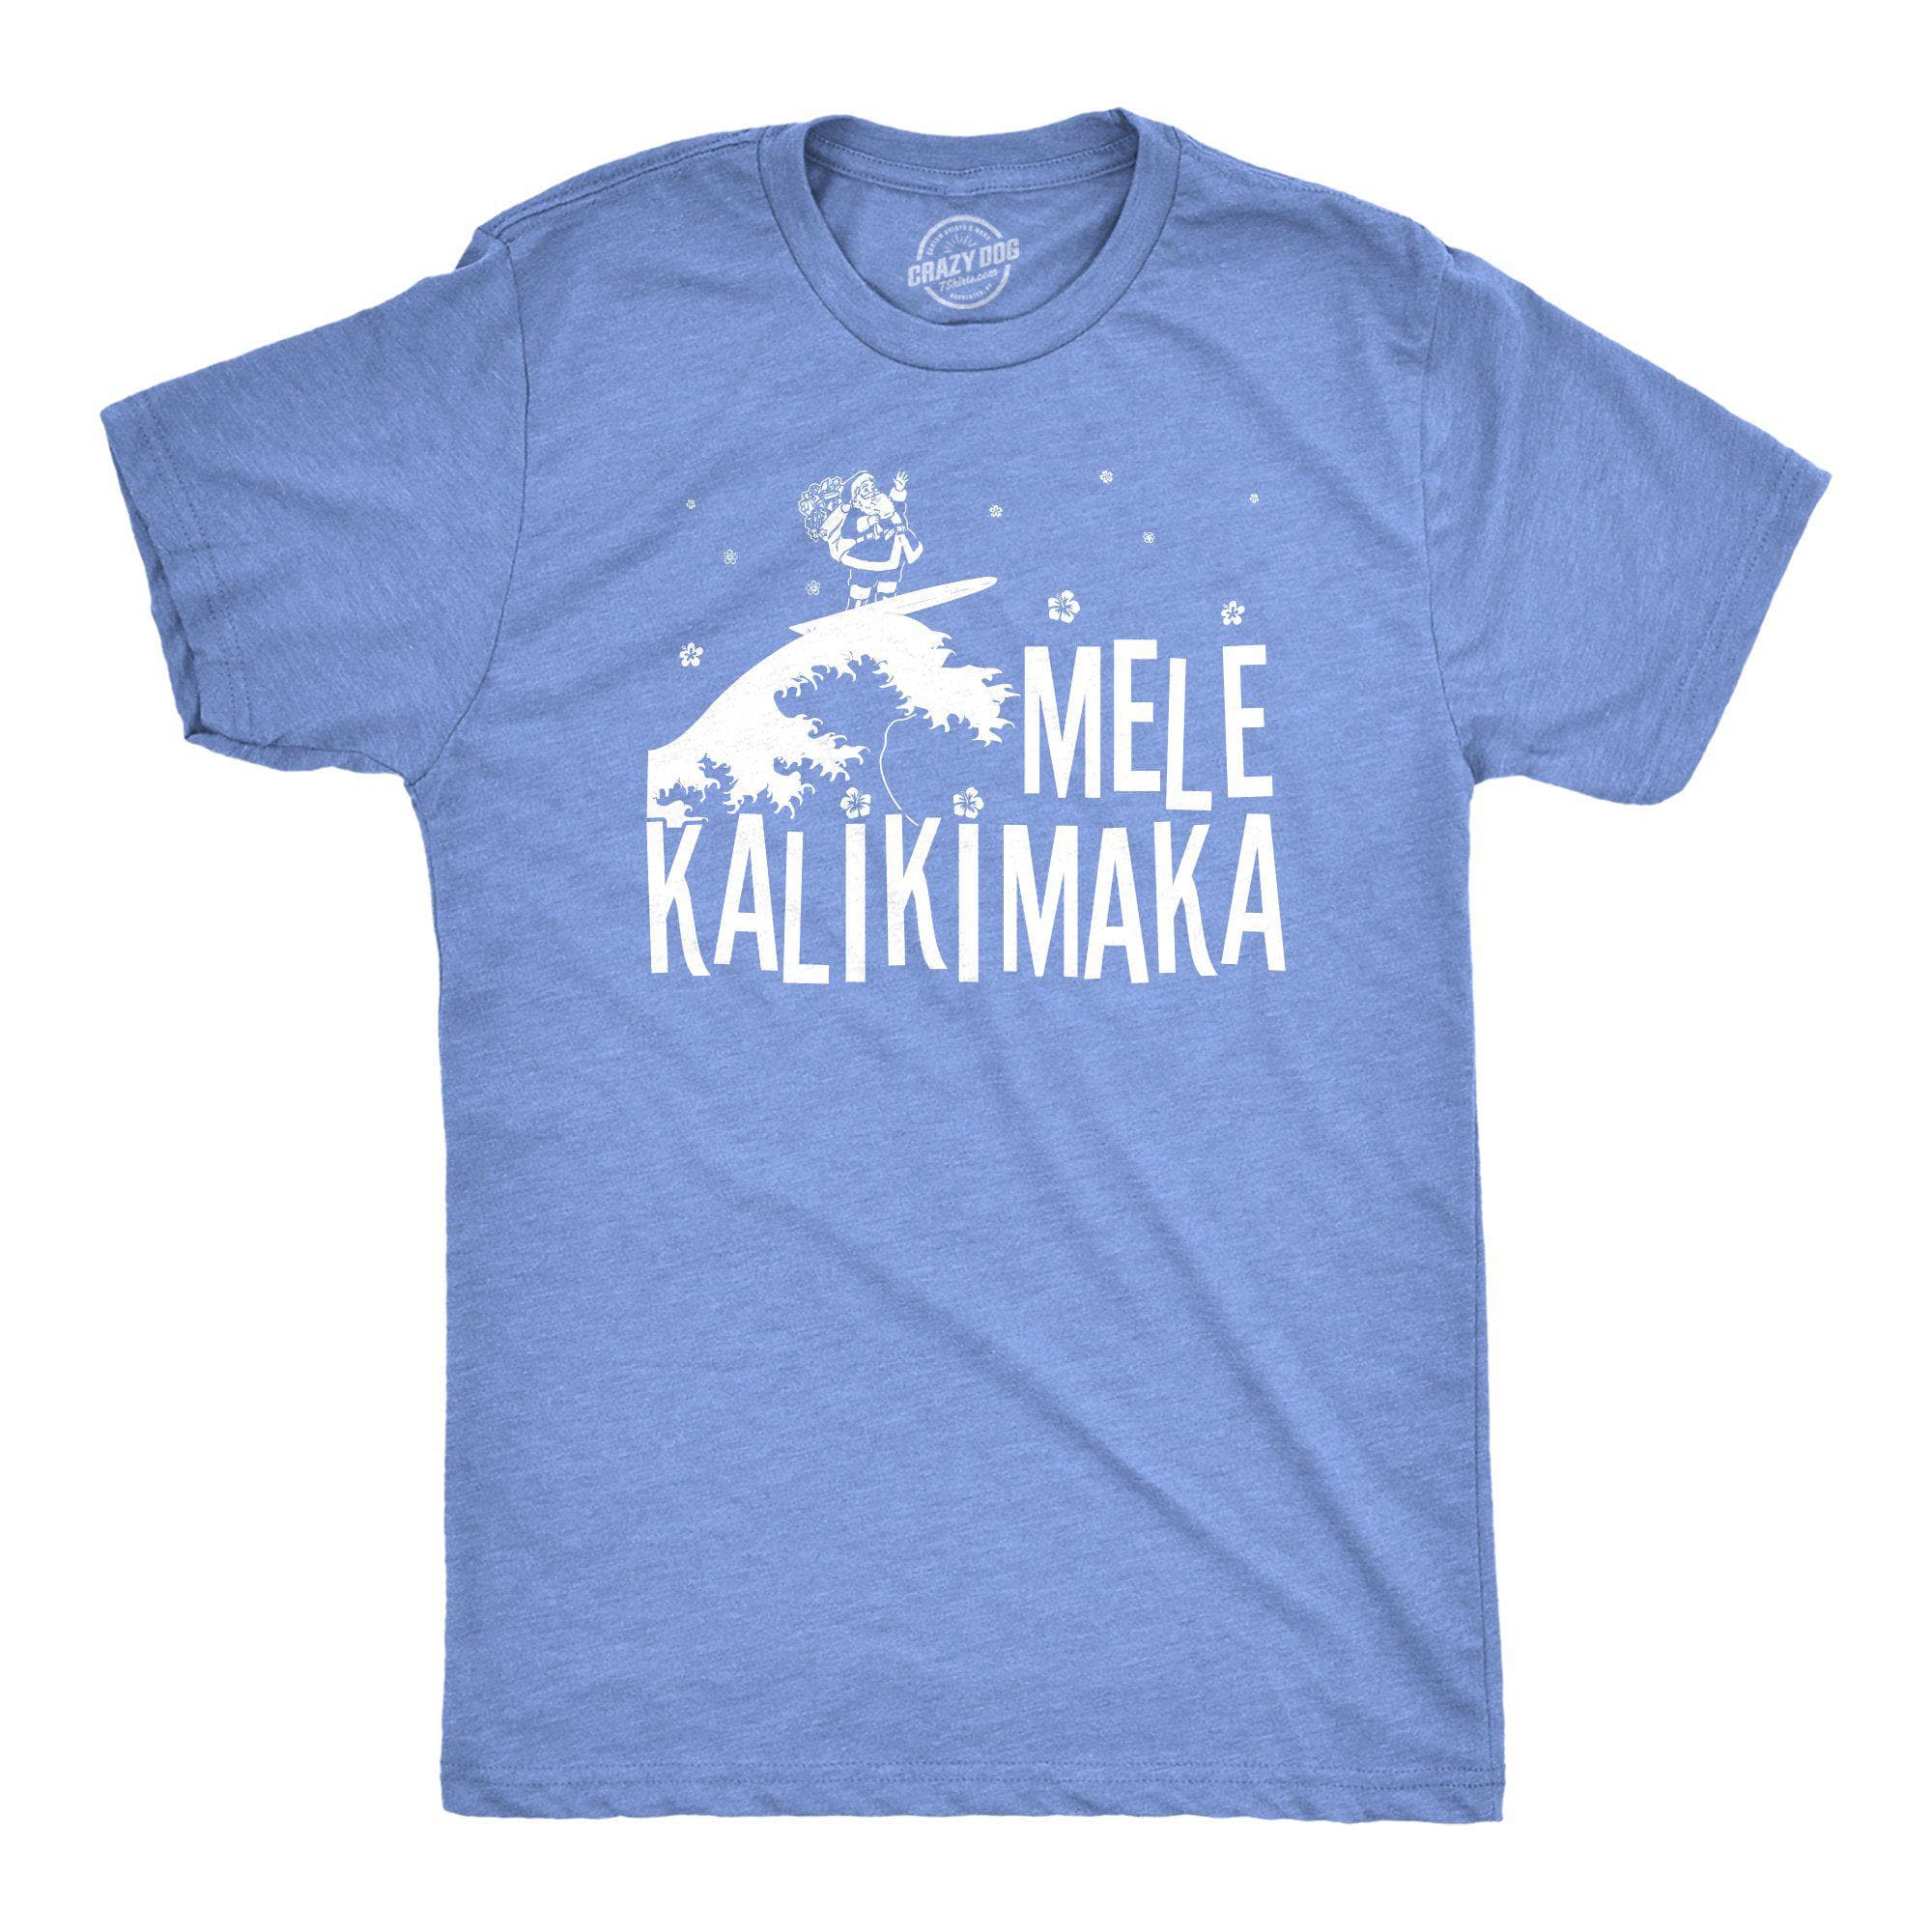 Mele Kalikimaka Men's Tshirt - Crazy Dog T-Shirts